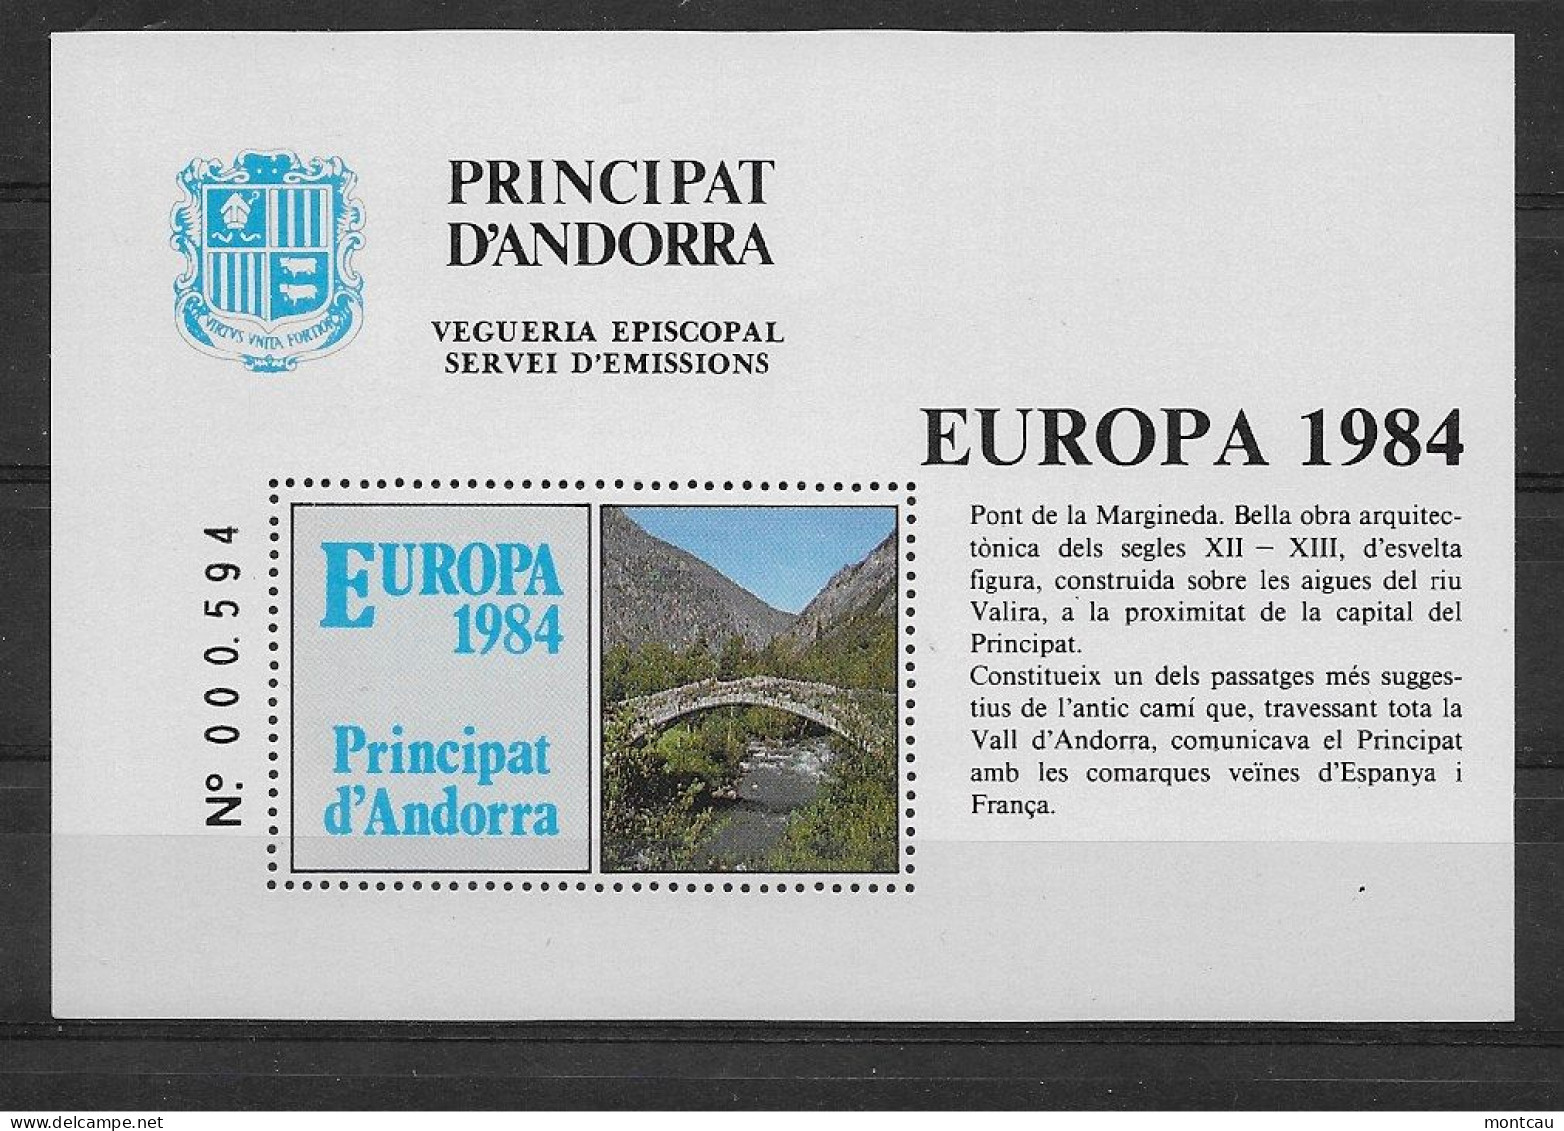 Andorra - 1984 - Vegueria Episcopal Europa - Vegueria Episcopal